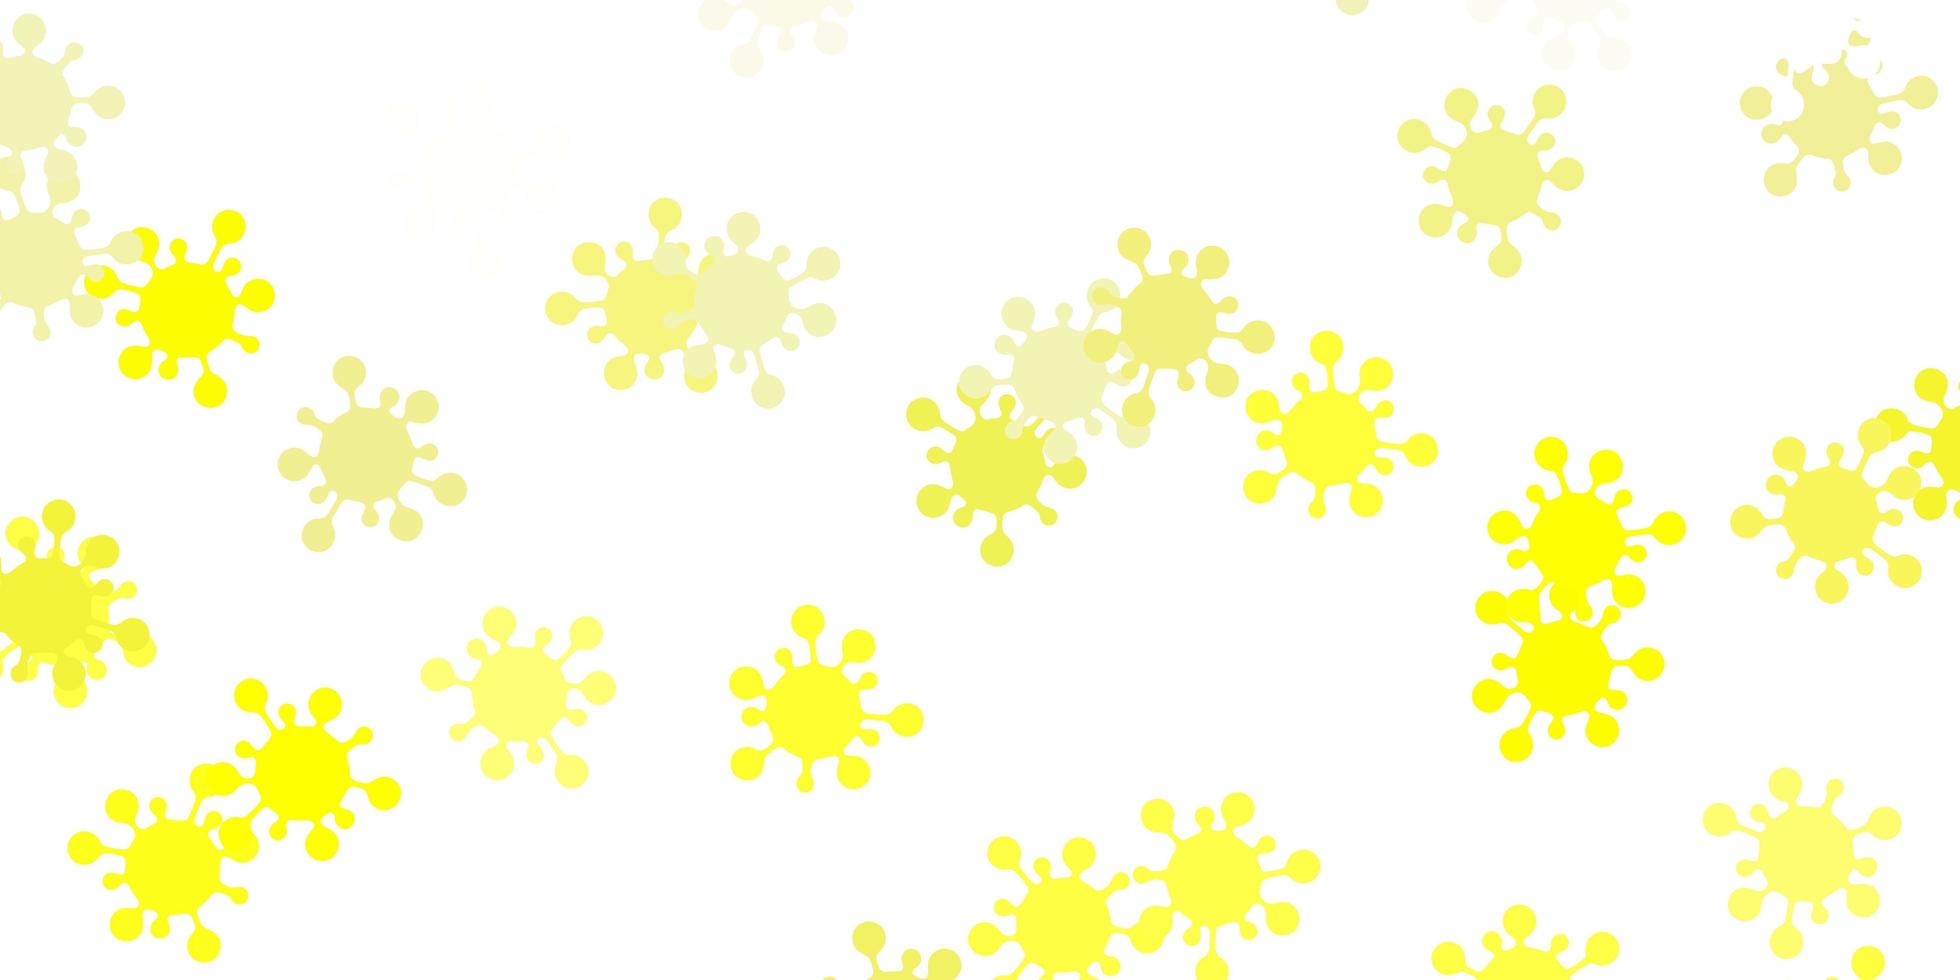 sfondo vettoriale giallo chiaro con simboli covid-19.